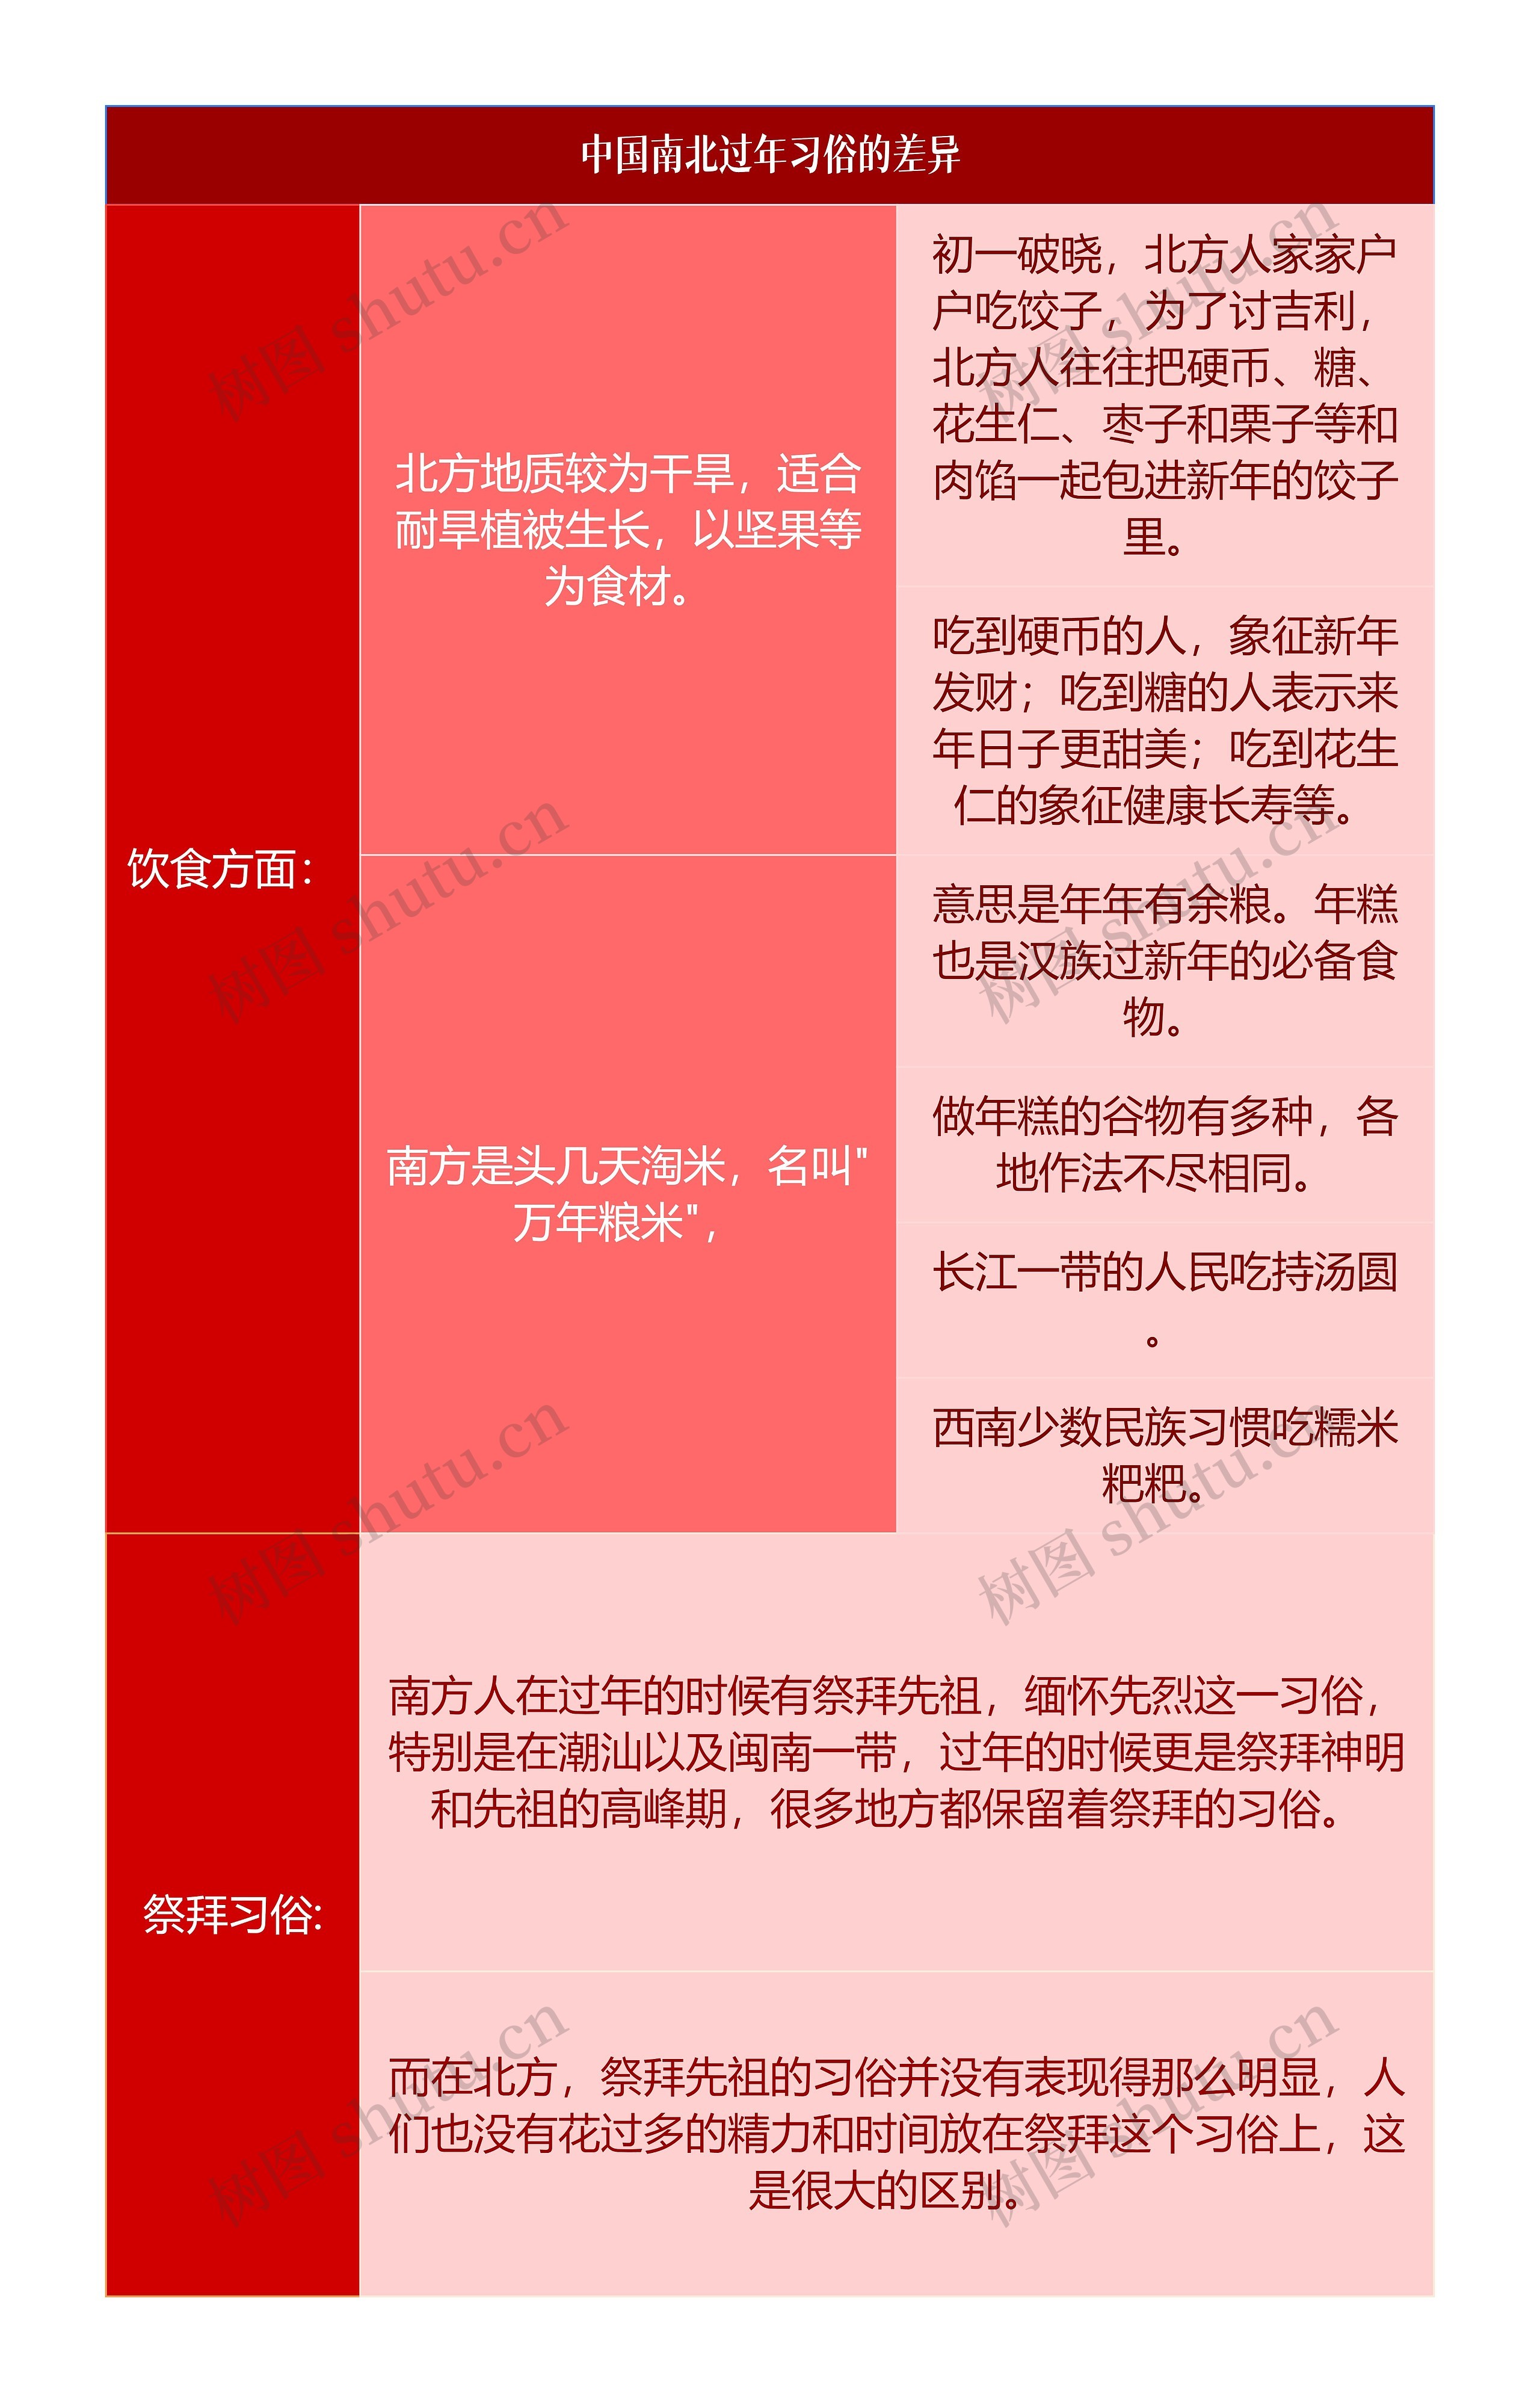 中国南北过年习俗的差异简图